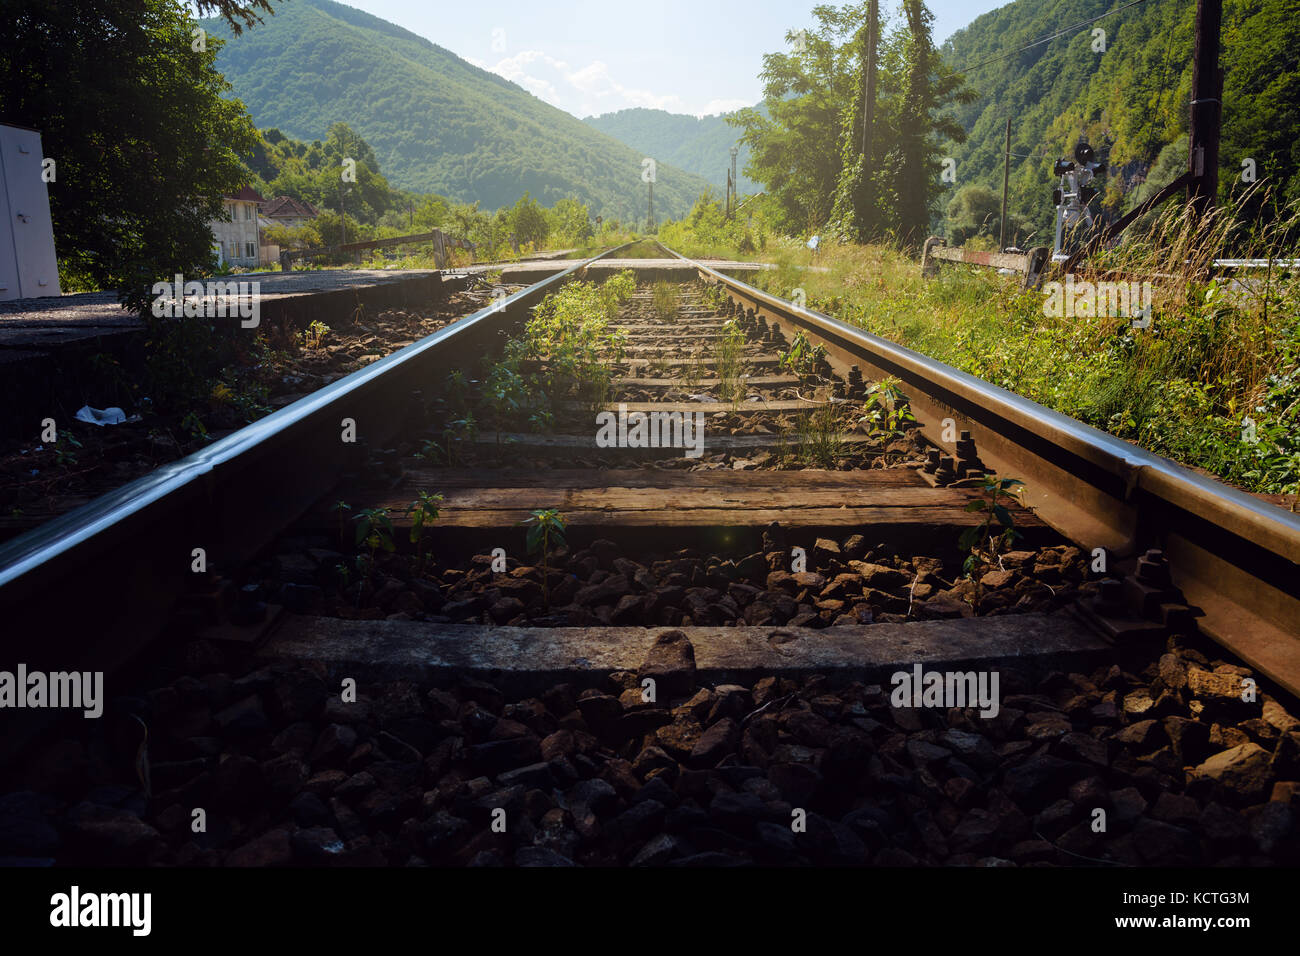 Vista de ángulo bajo las vías del ferrocarril, con disminución de la perspectiva que conduce a exuberantes montañas verdes Foto de stock